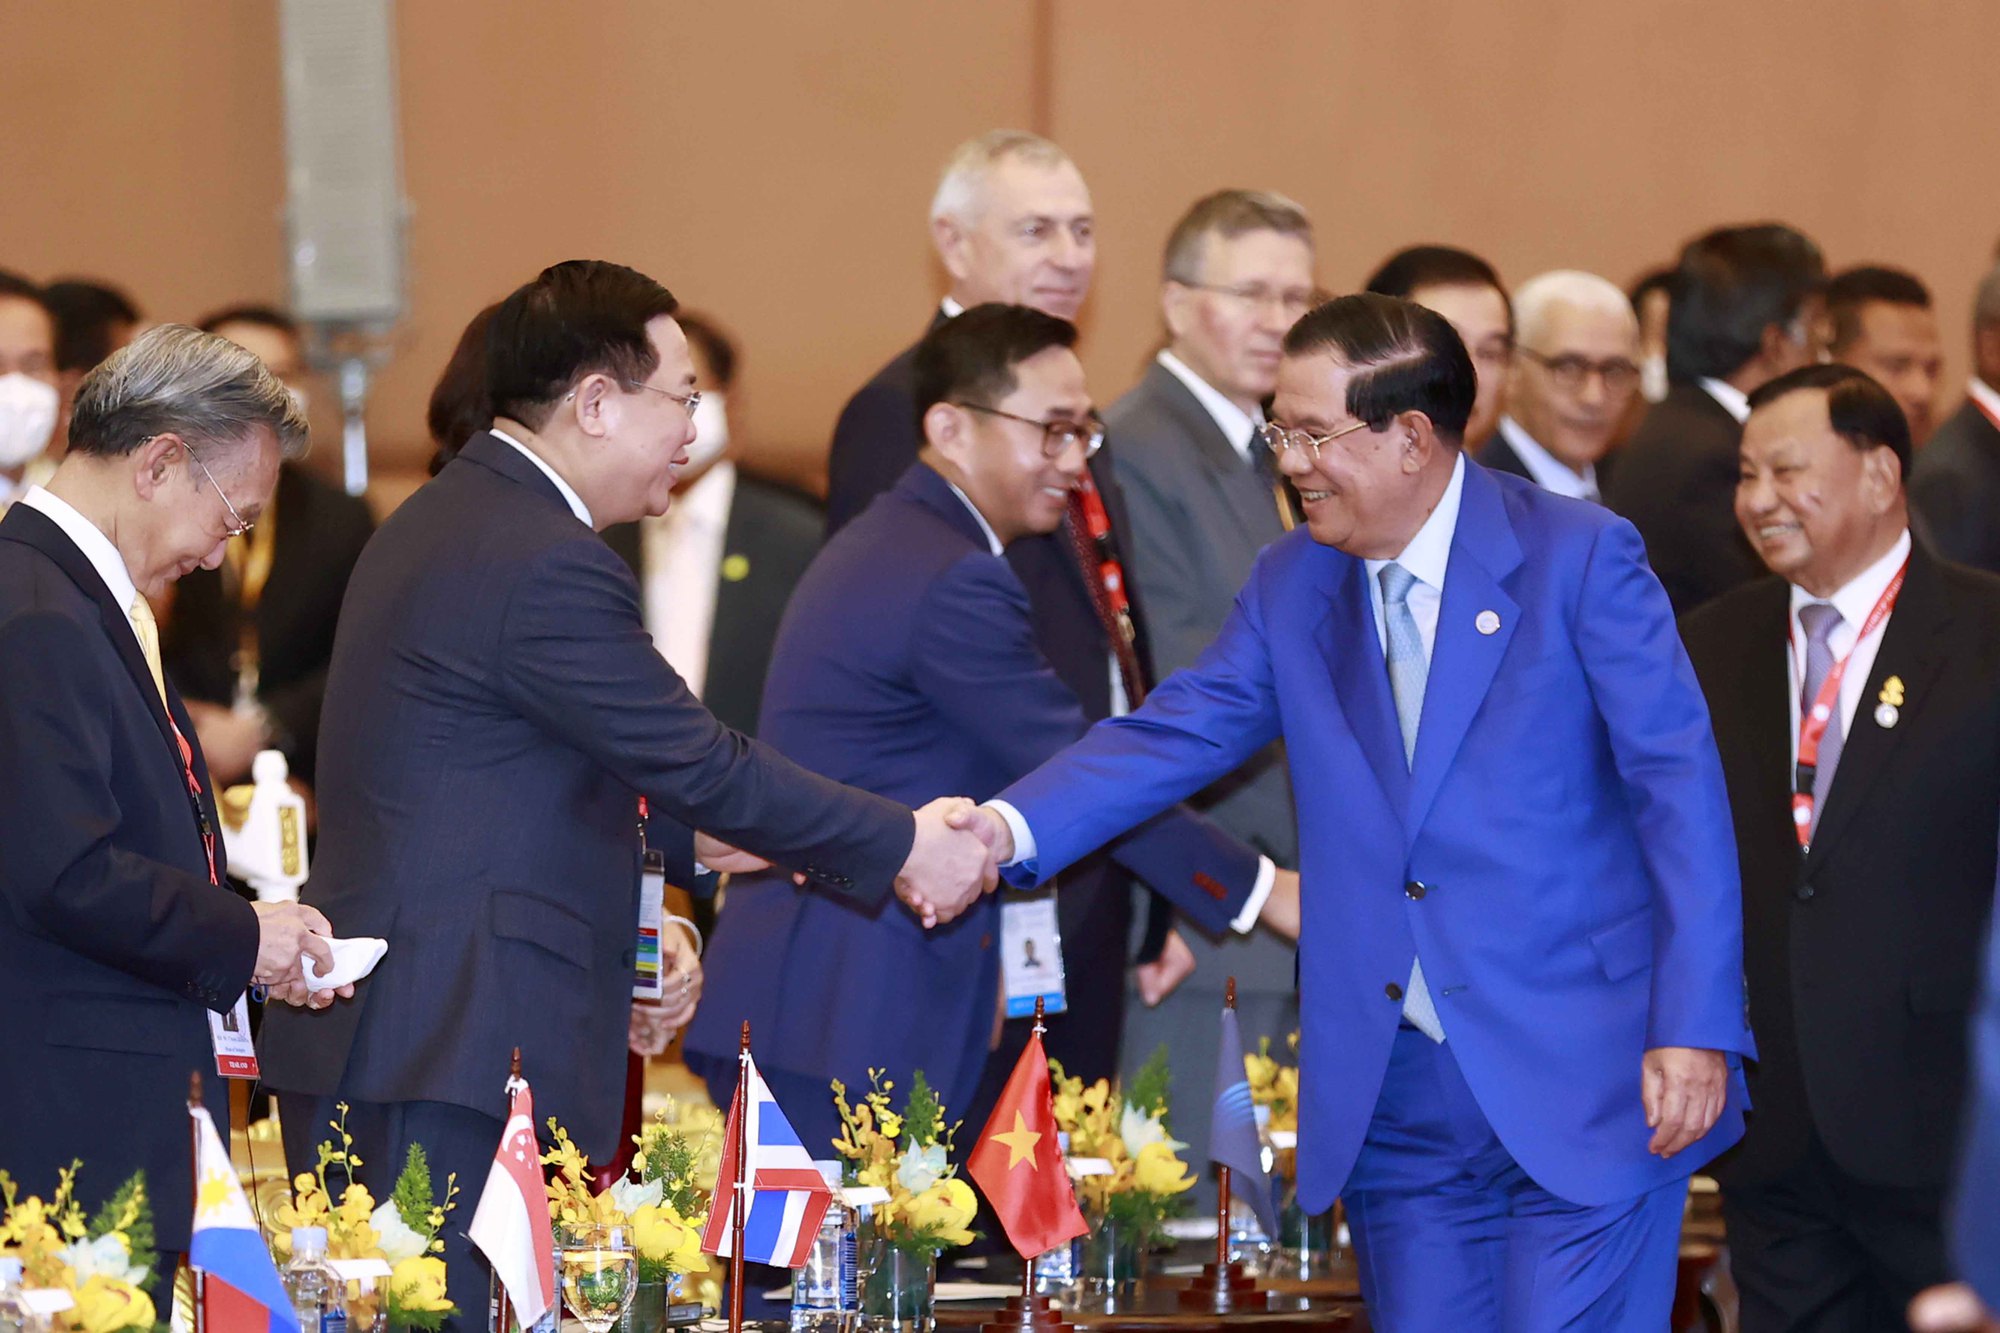 Khai mạc Đại hội đồng liên nghị viện các quốc gia Đông Nam Á lần thứ 43 - Ảnh 6.